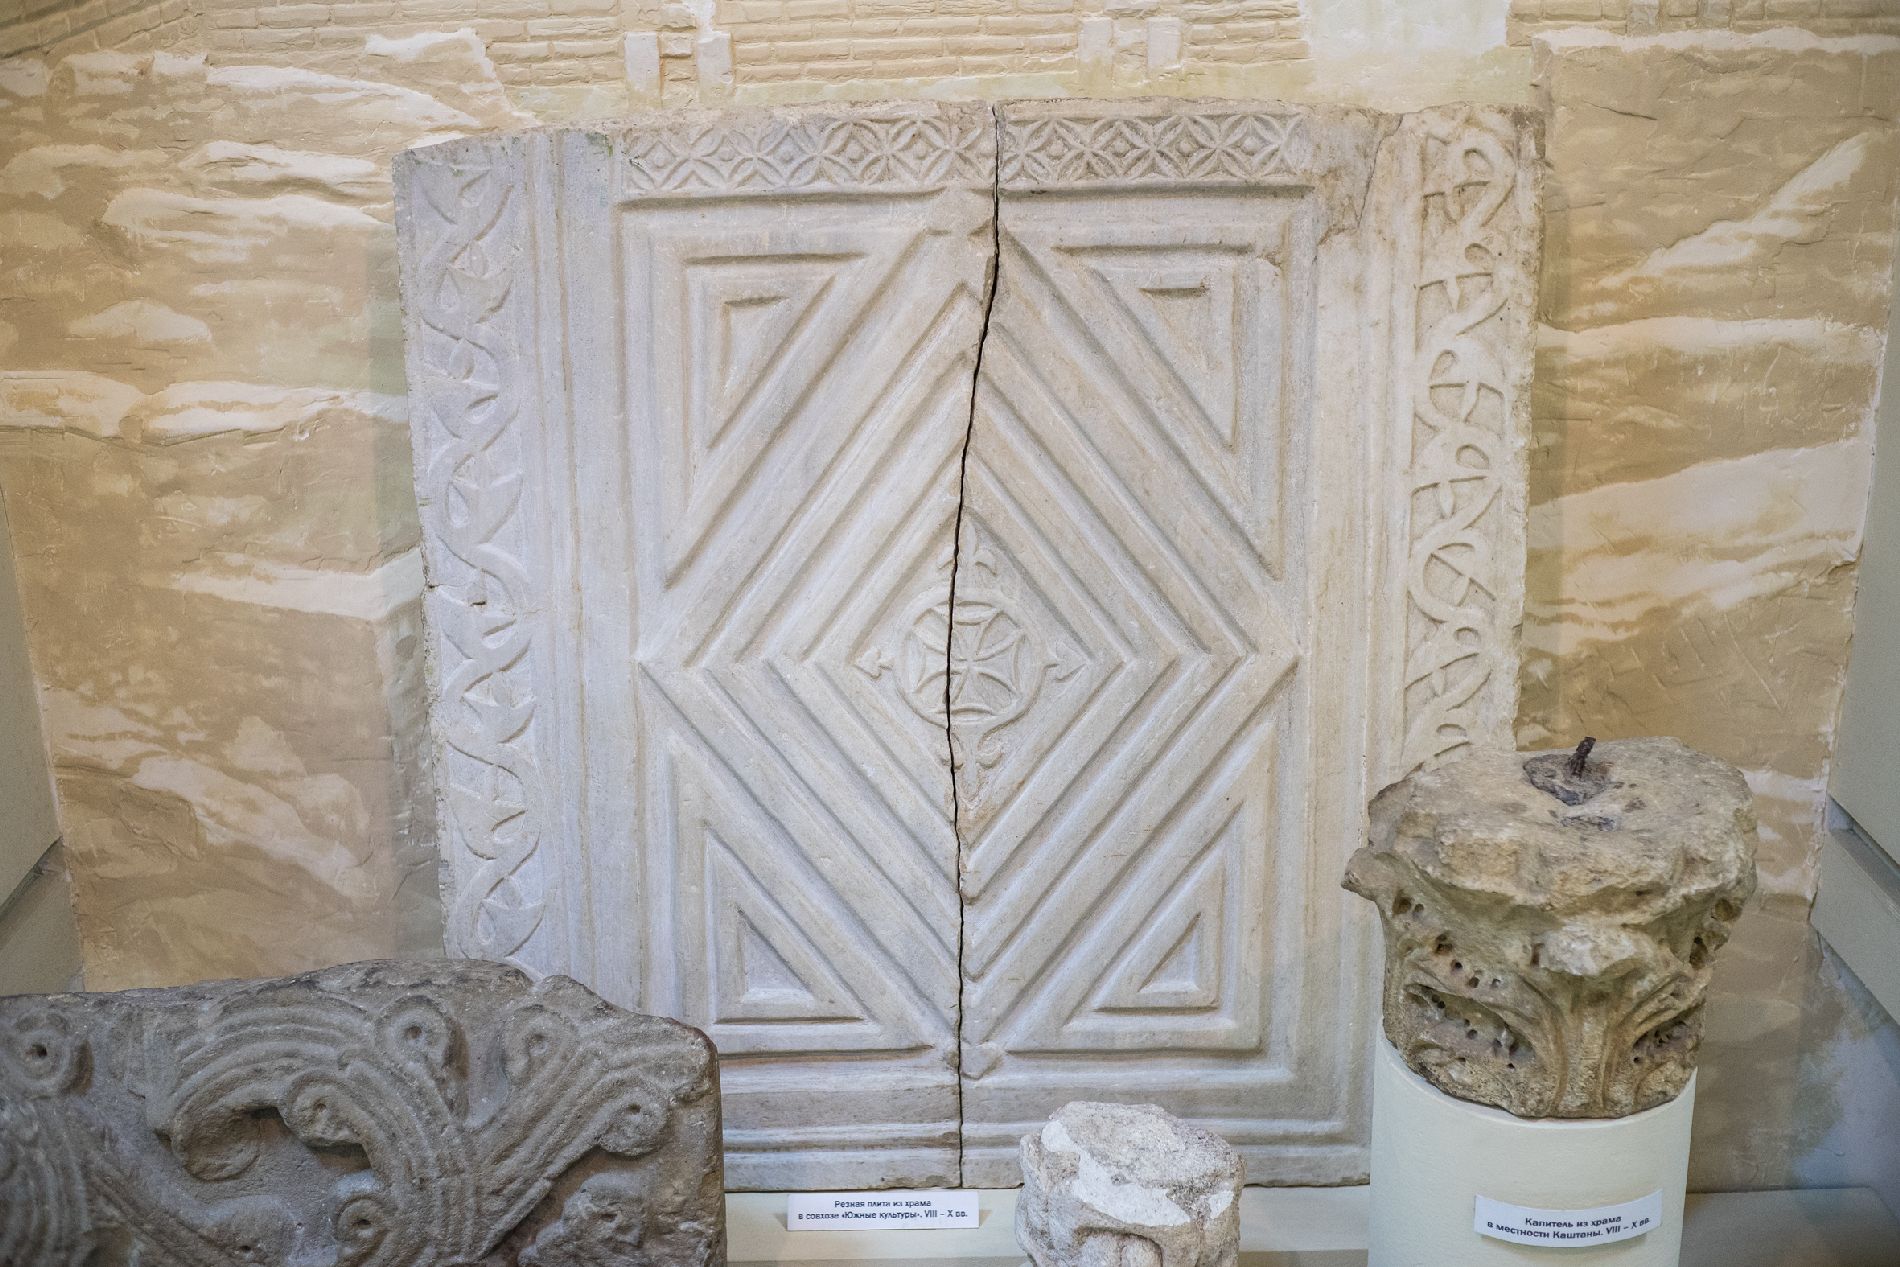 Фрагменты мраморного декора утраченной базилики, строительство которой датируется VI веком. Музей истории Сочи